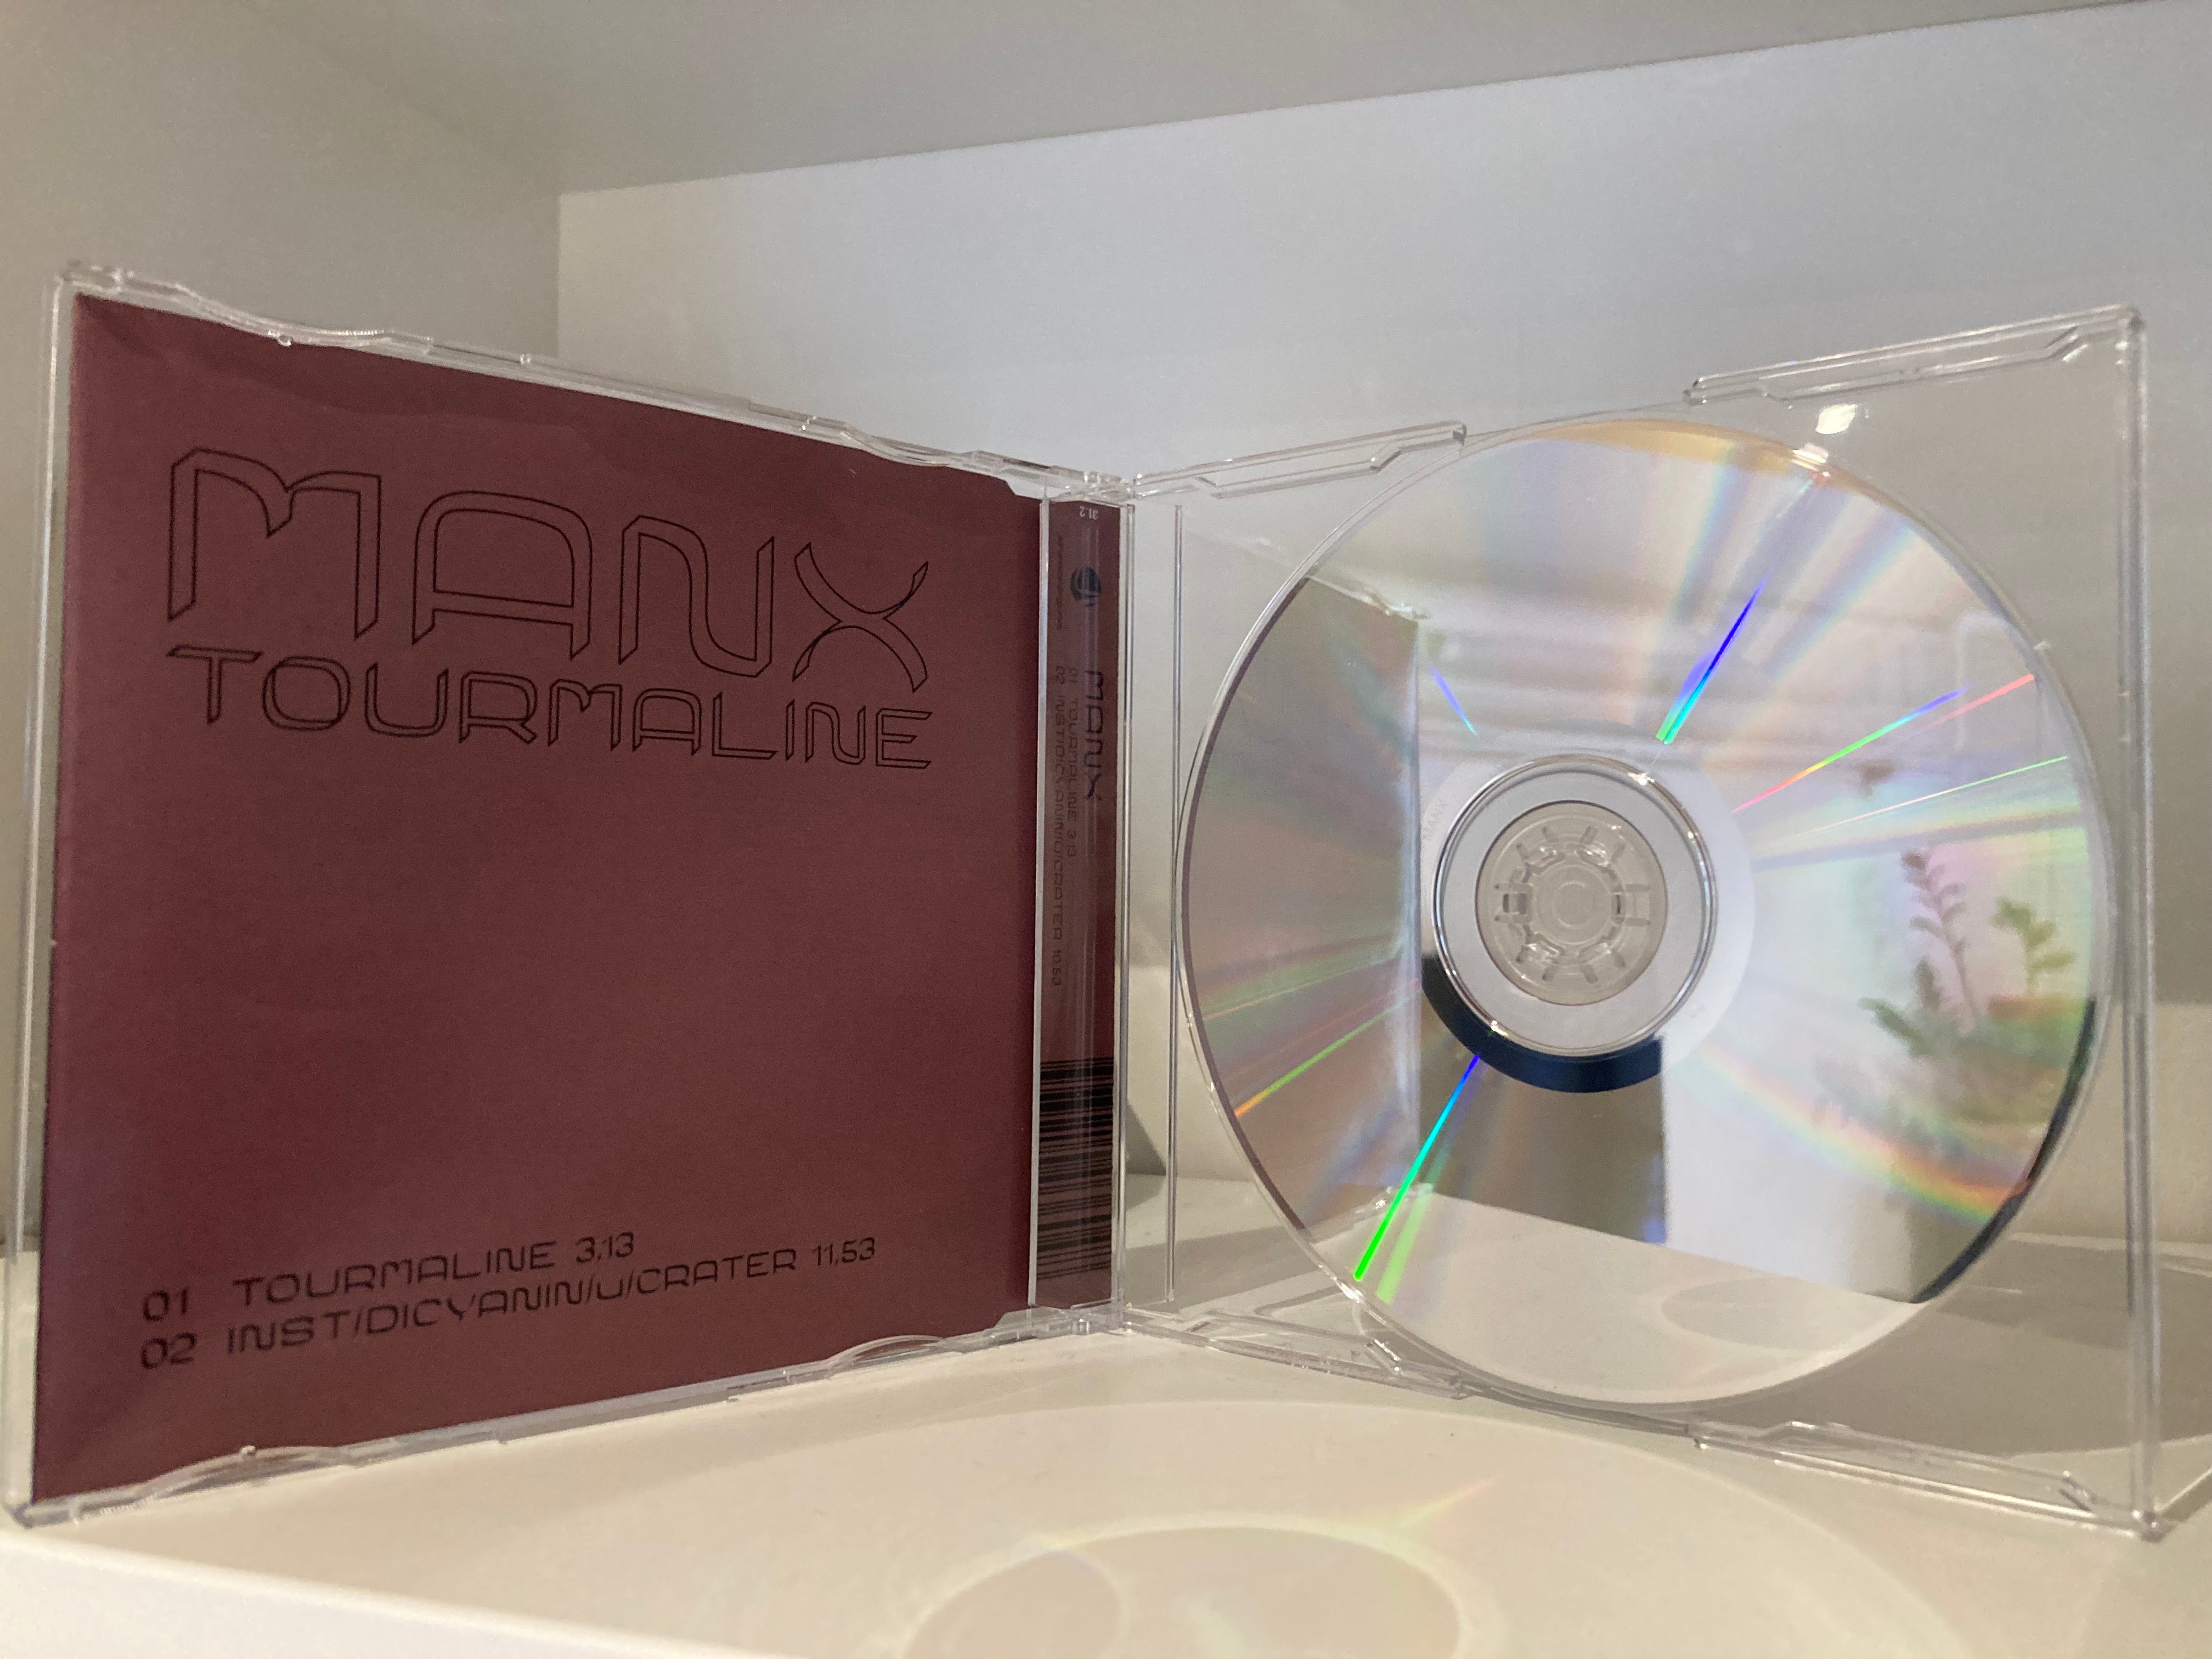 MANX - TOURMALINE (Slim jewel case CD single)